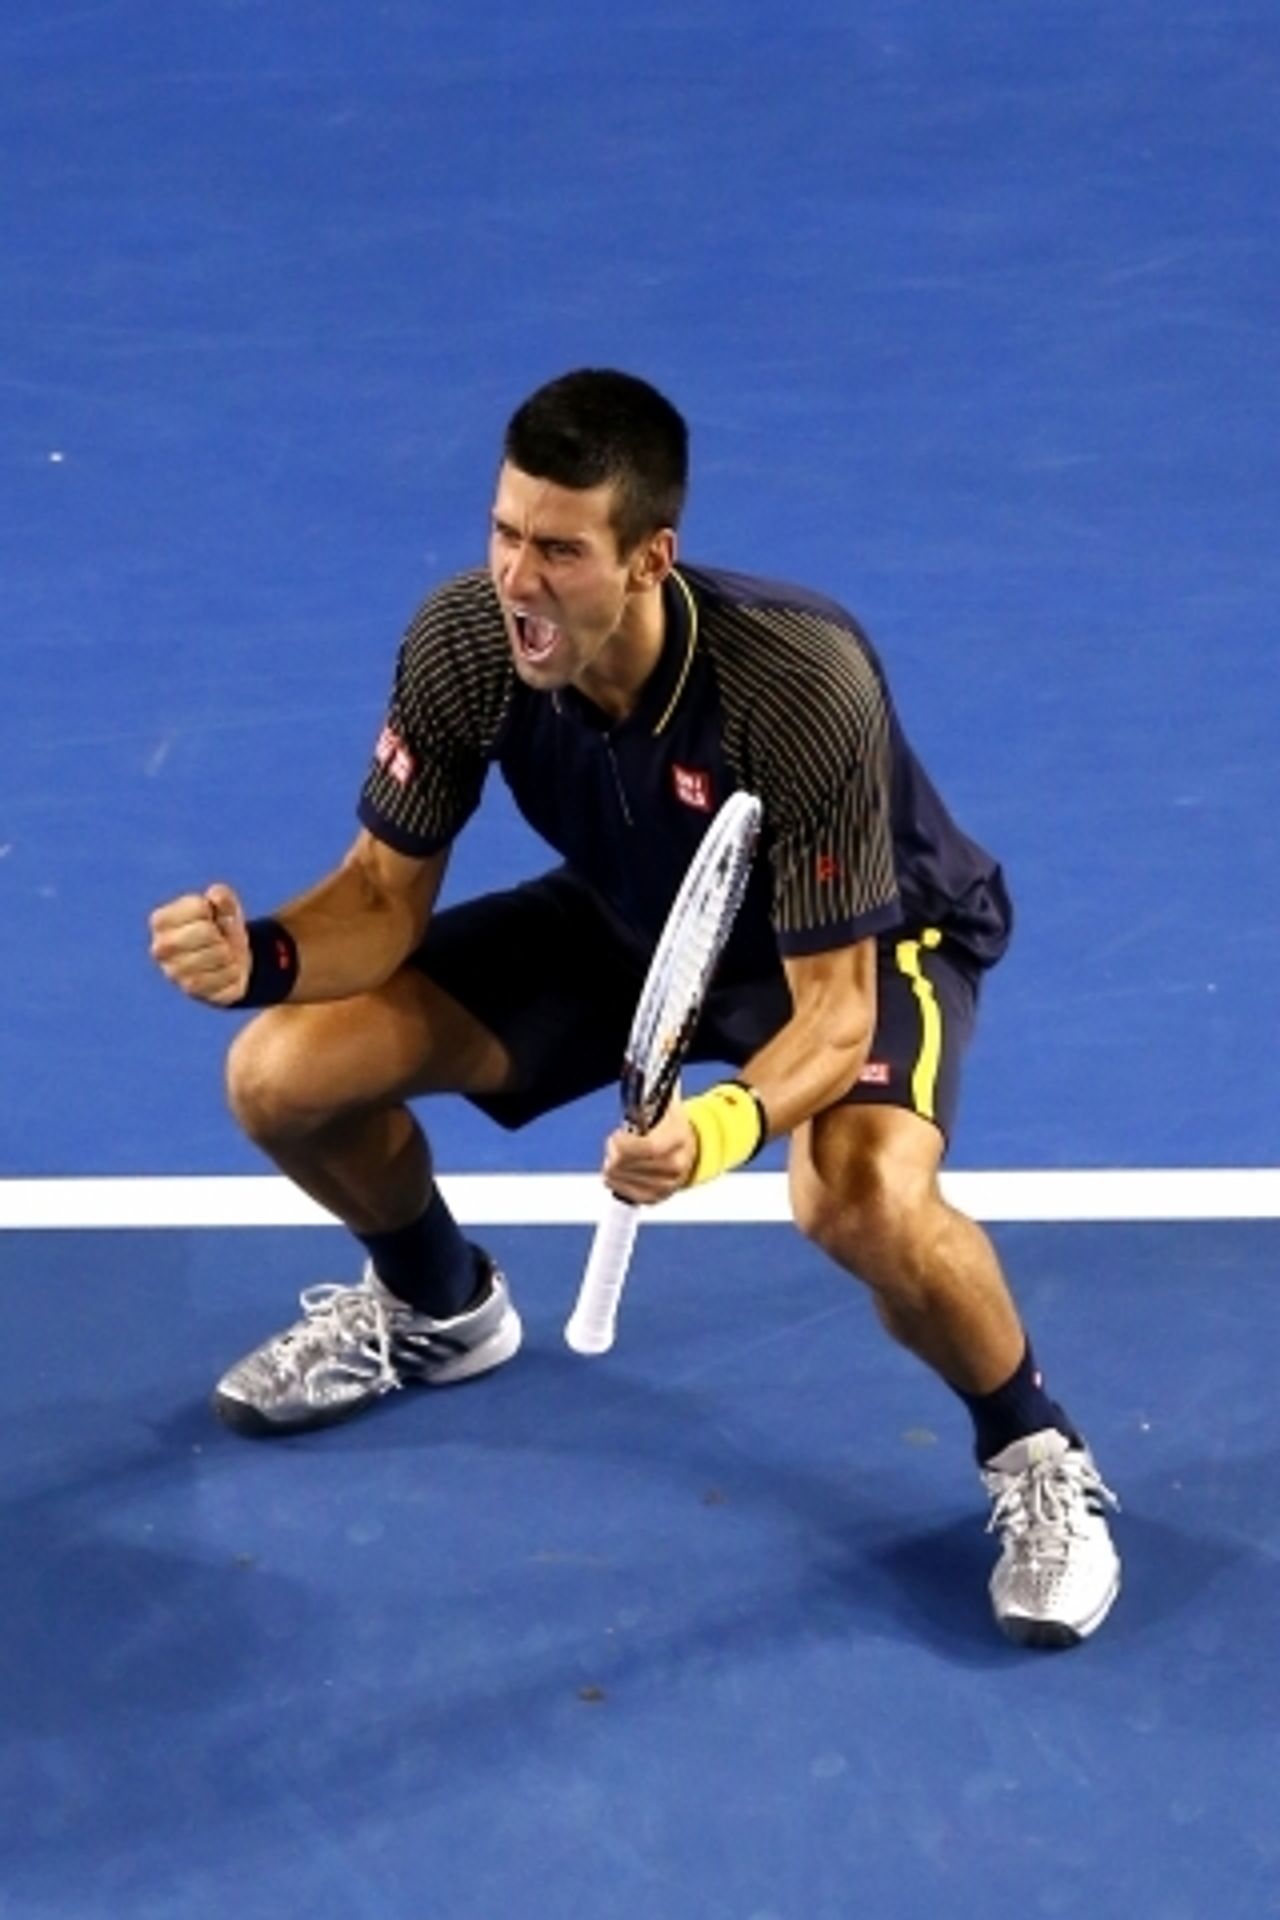 Novak Djokovič vyhrál potřetí v řadě Australian Open - 6 - GALERIE: Djokovič potřetí v řadě triumfuje na Australian Open (8/9)